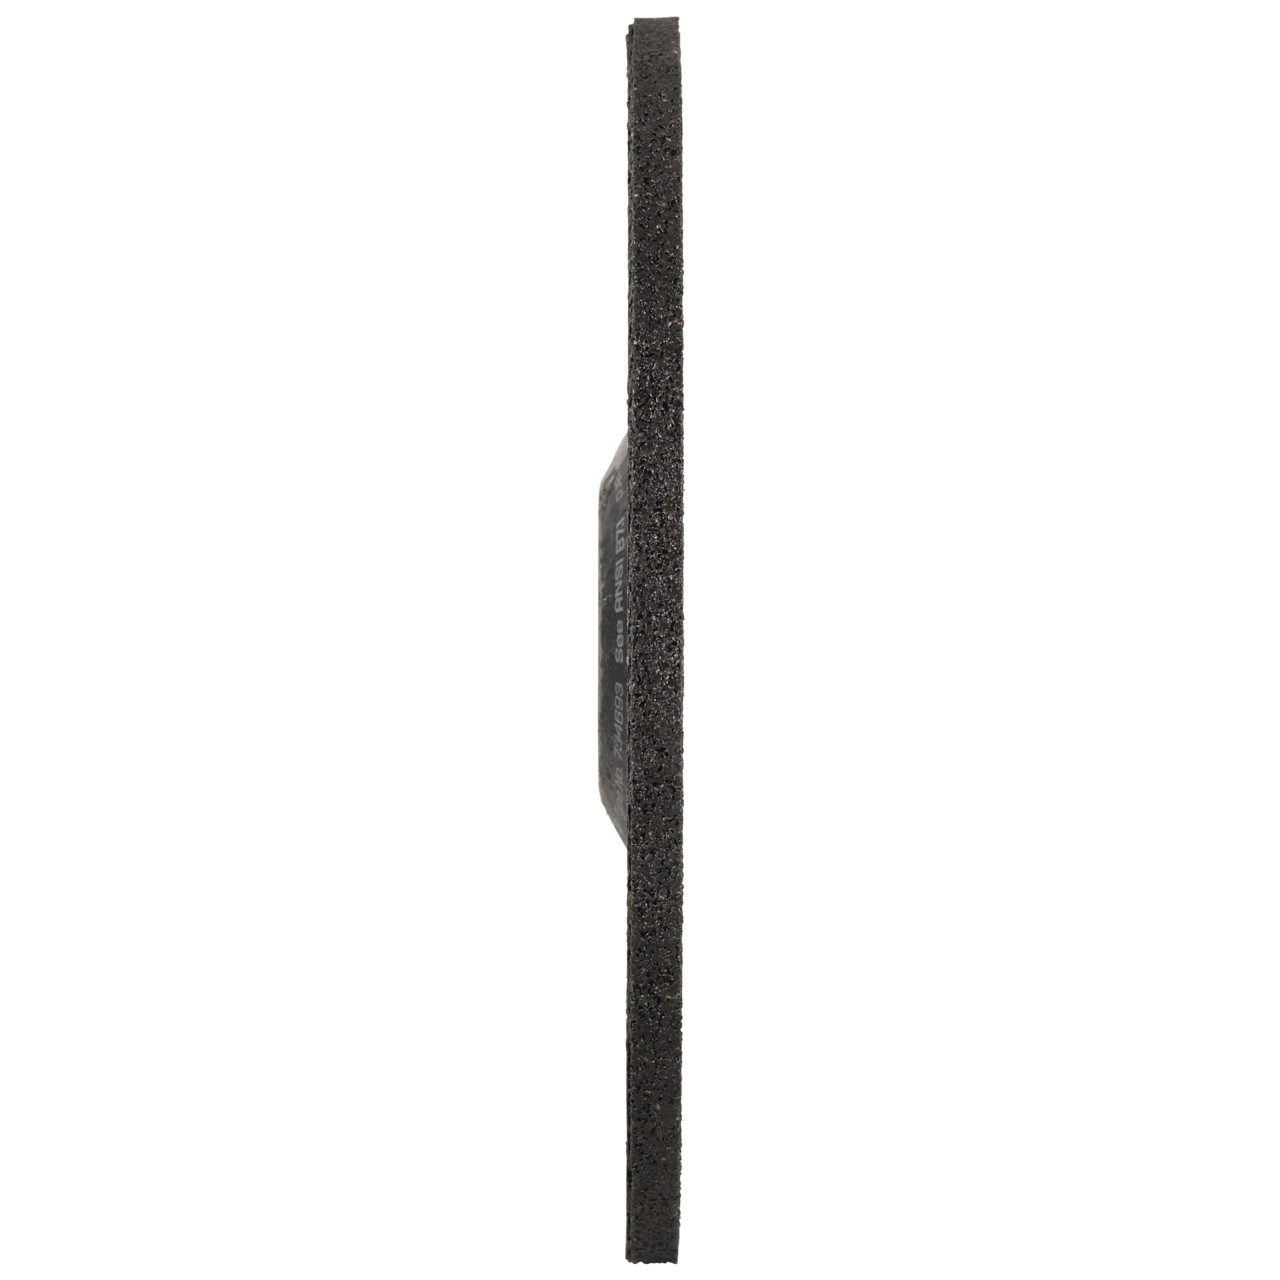 Tyrolit Grove slijpschijf DxUxH 230x7x22,23 PIPELINER 2in1 voor staal en roestvrij staal, vorm: 27 - offset uitvoering, Art. 34307835